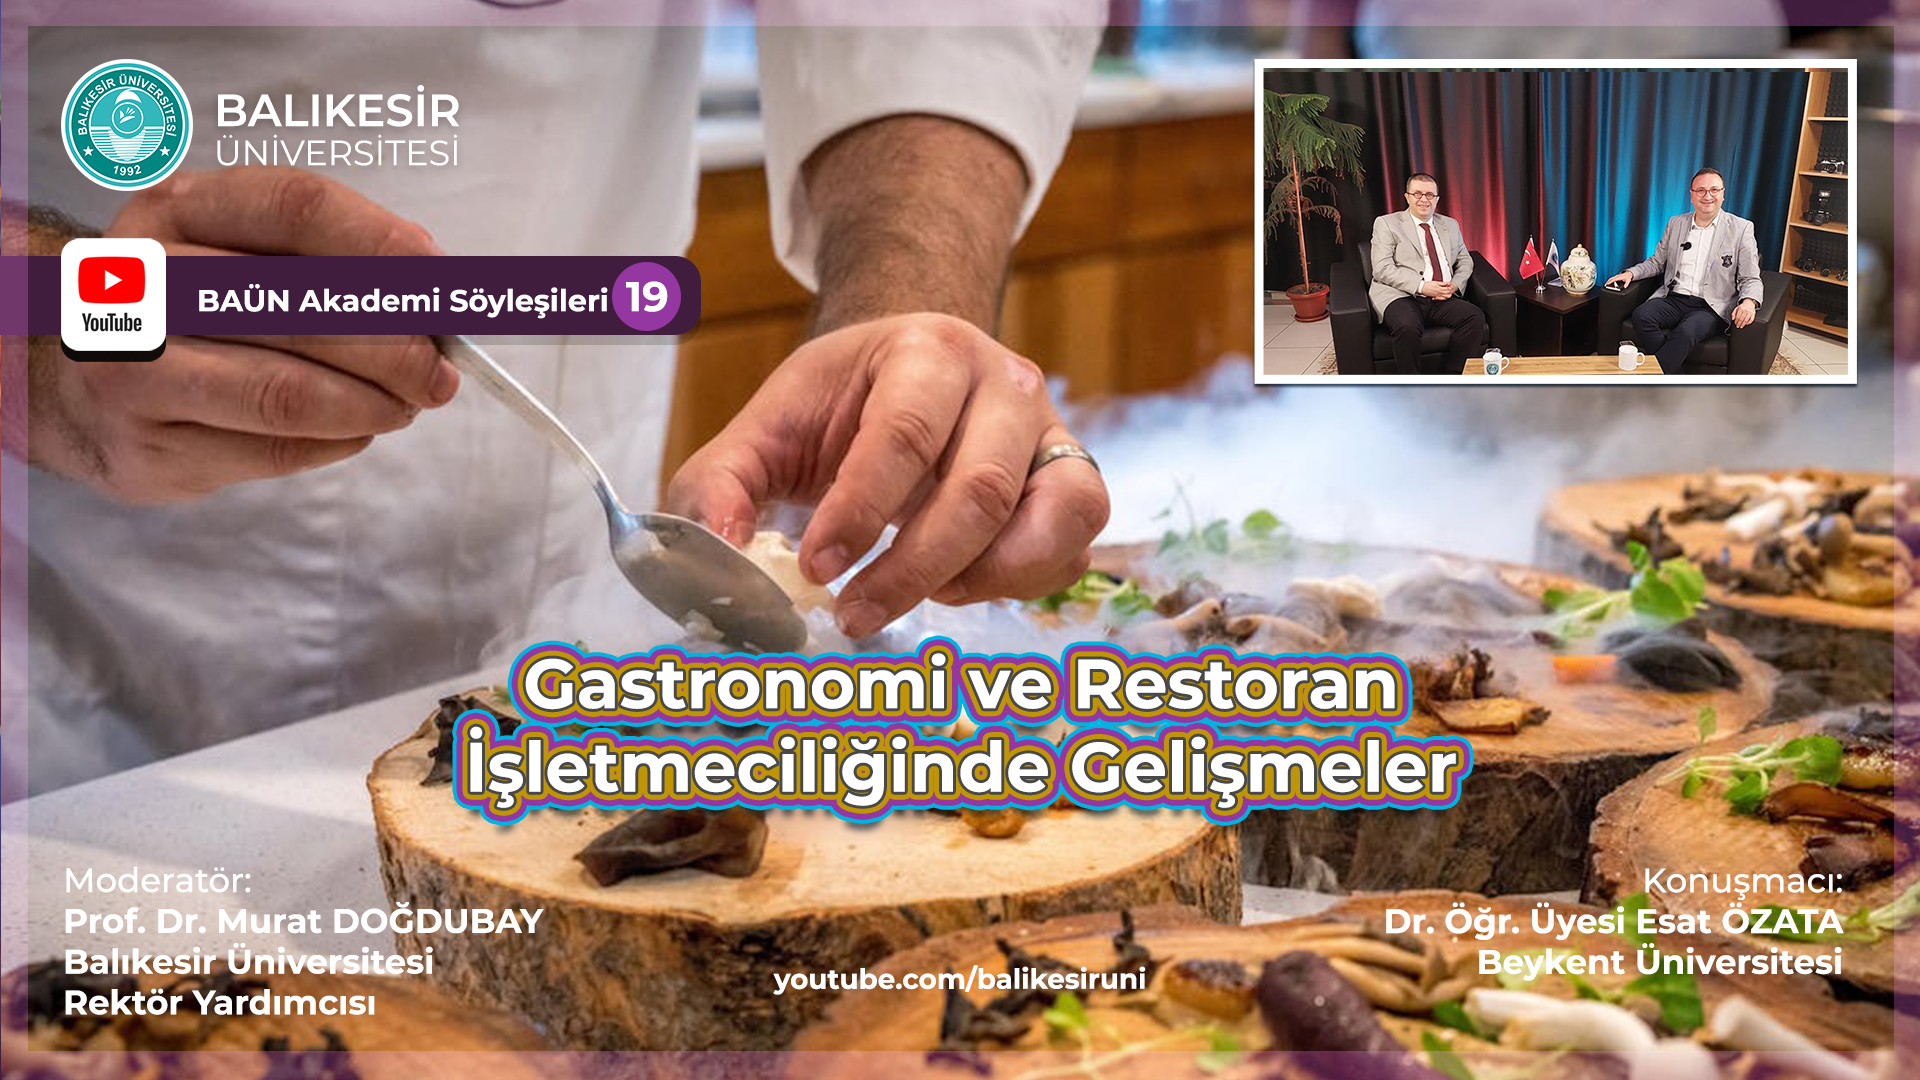 Gastronomi ve Restoran İşletmeciliğinde Gelişmeler Programı